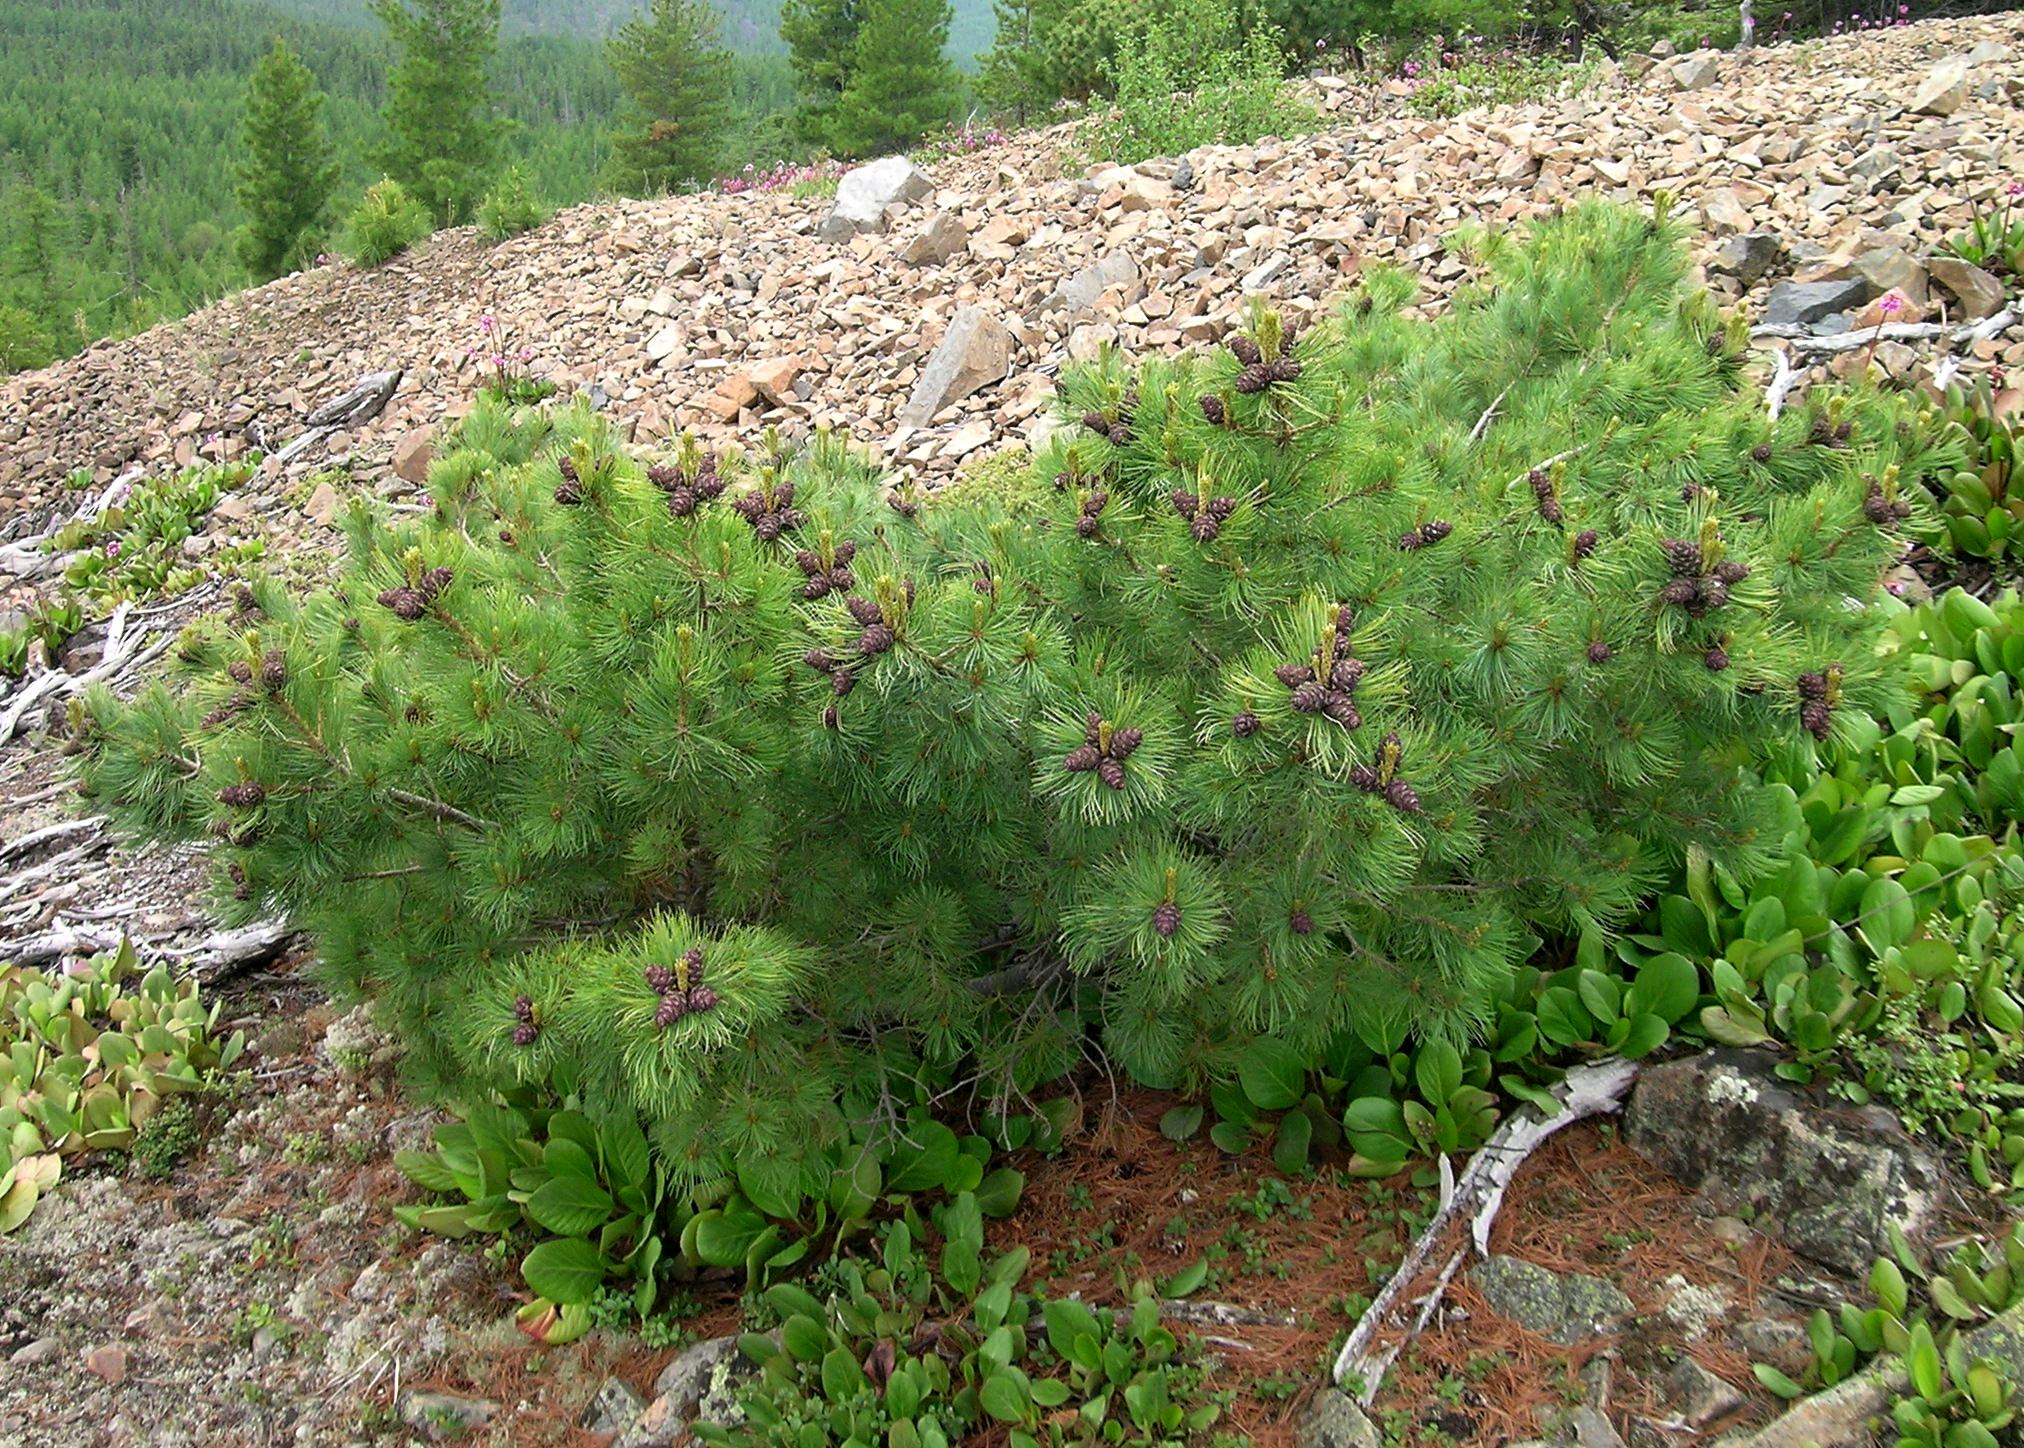 Кедровый стланик (Pinus pumila) - замечательно декоративный и очень полезный во всех отношениях вид, широко распространенный (от Байкала до Чукотки). Это фотография из Южного Забайкалья (гора Сохондо). 